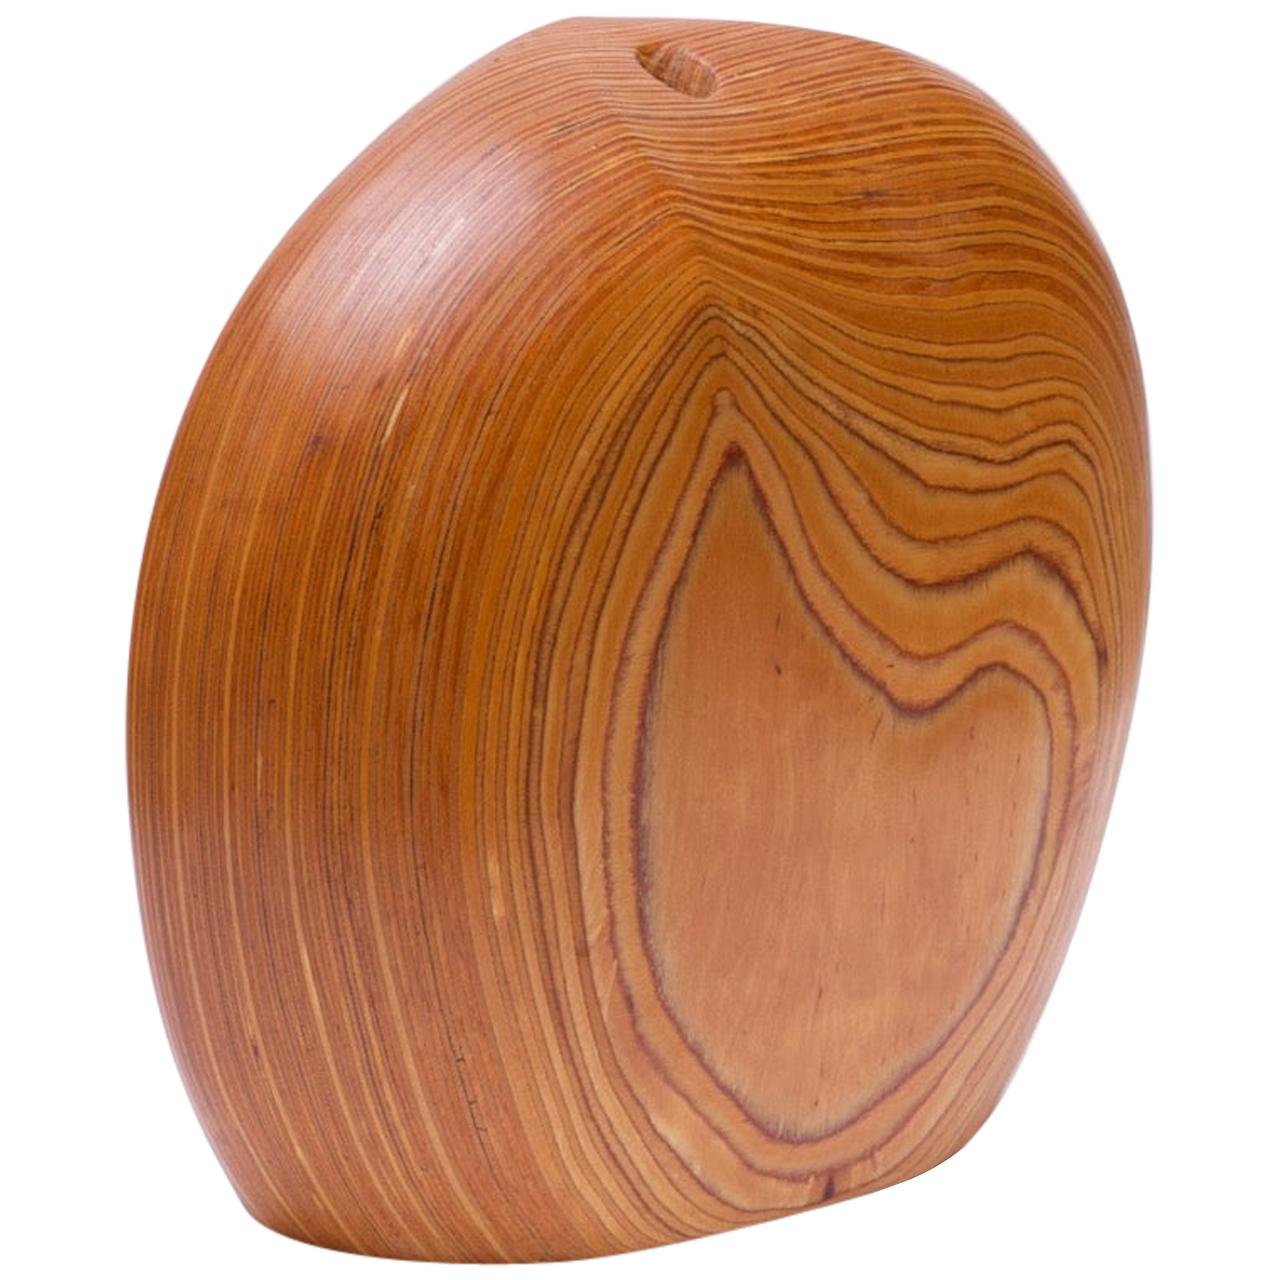 Large Modernist Organic-Form Hardwood Vase